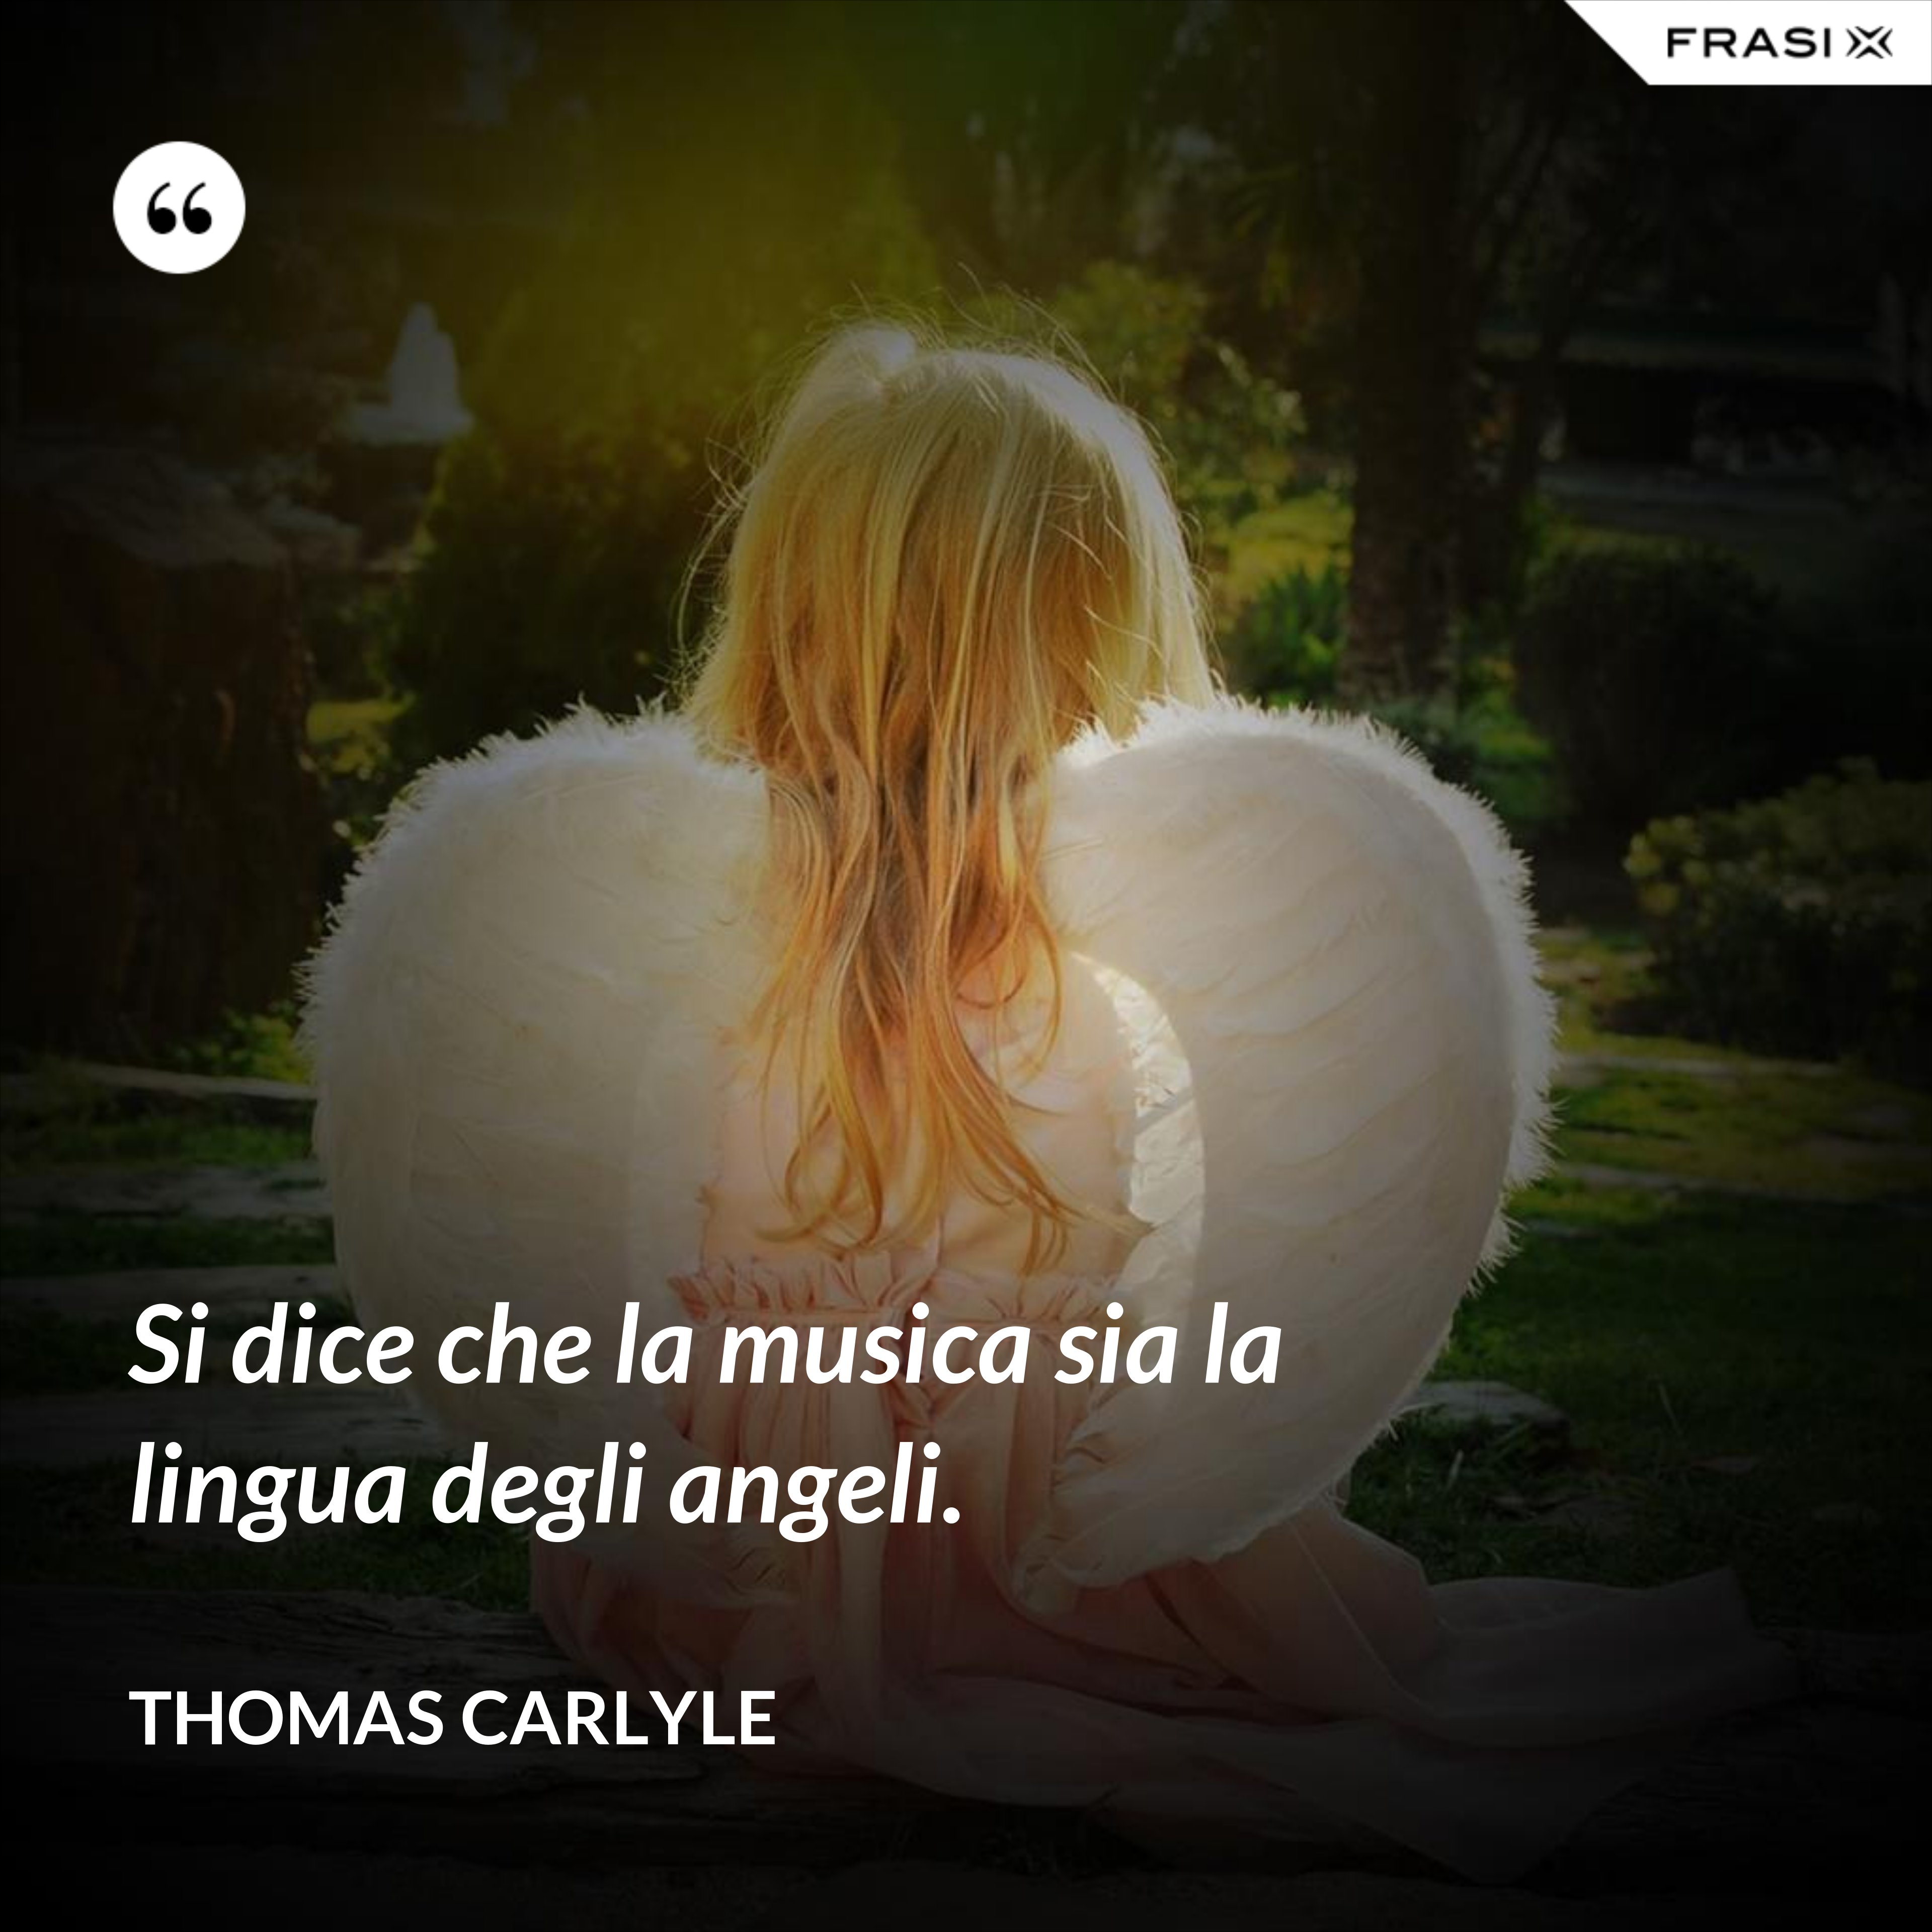 Si dice che la musica sia la lingua degli angeli. - Thomas Carlyle